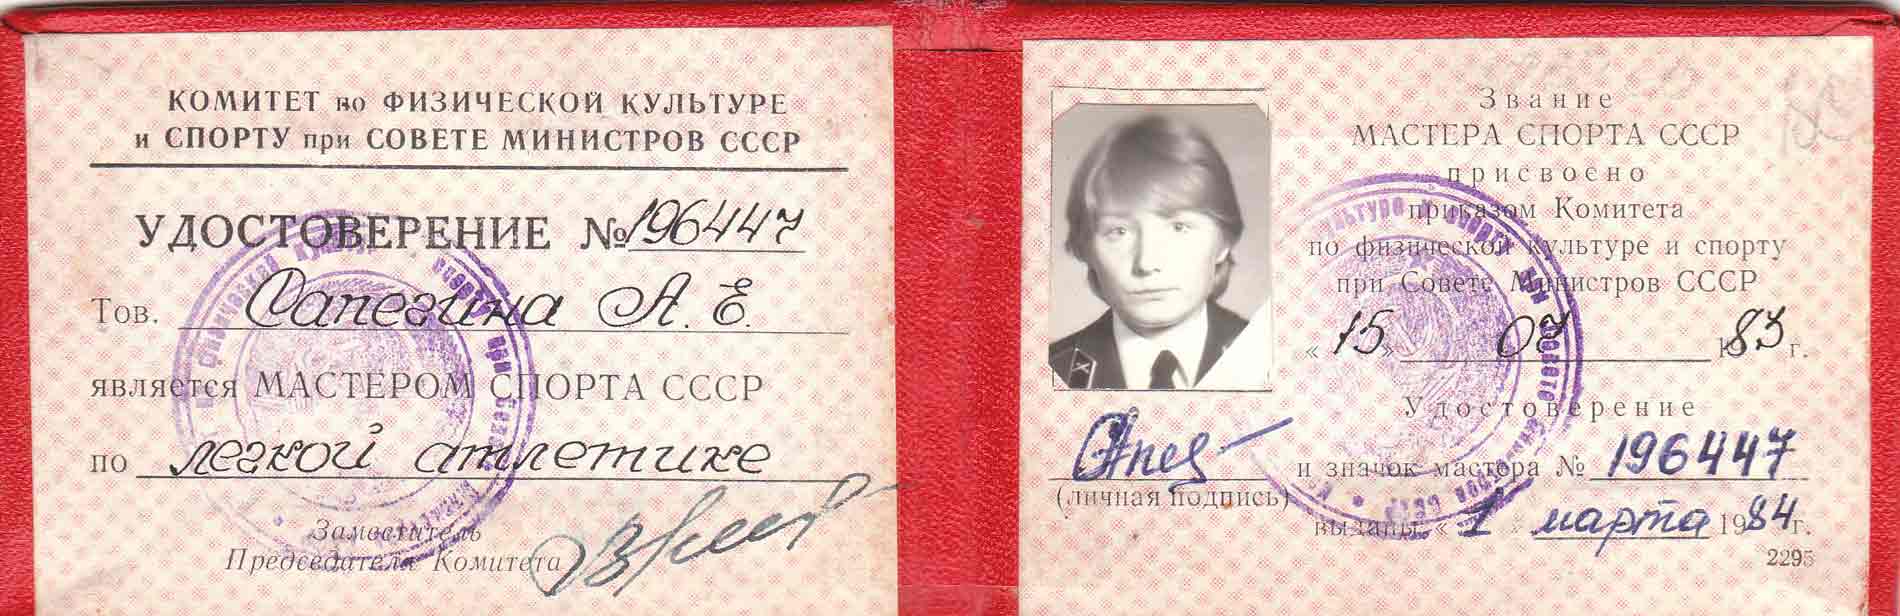 Удостоверение мастера спорта СССР 1985-1991